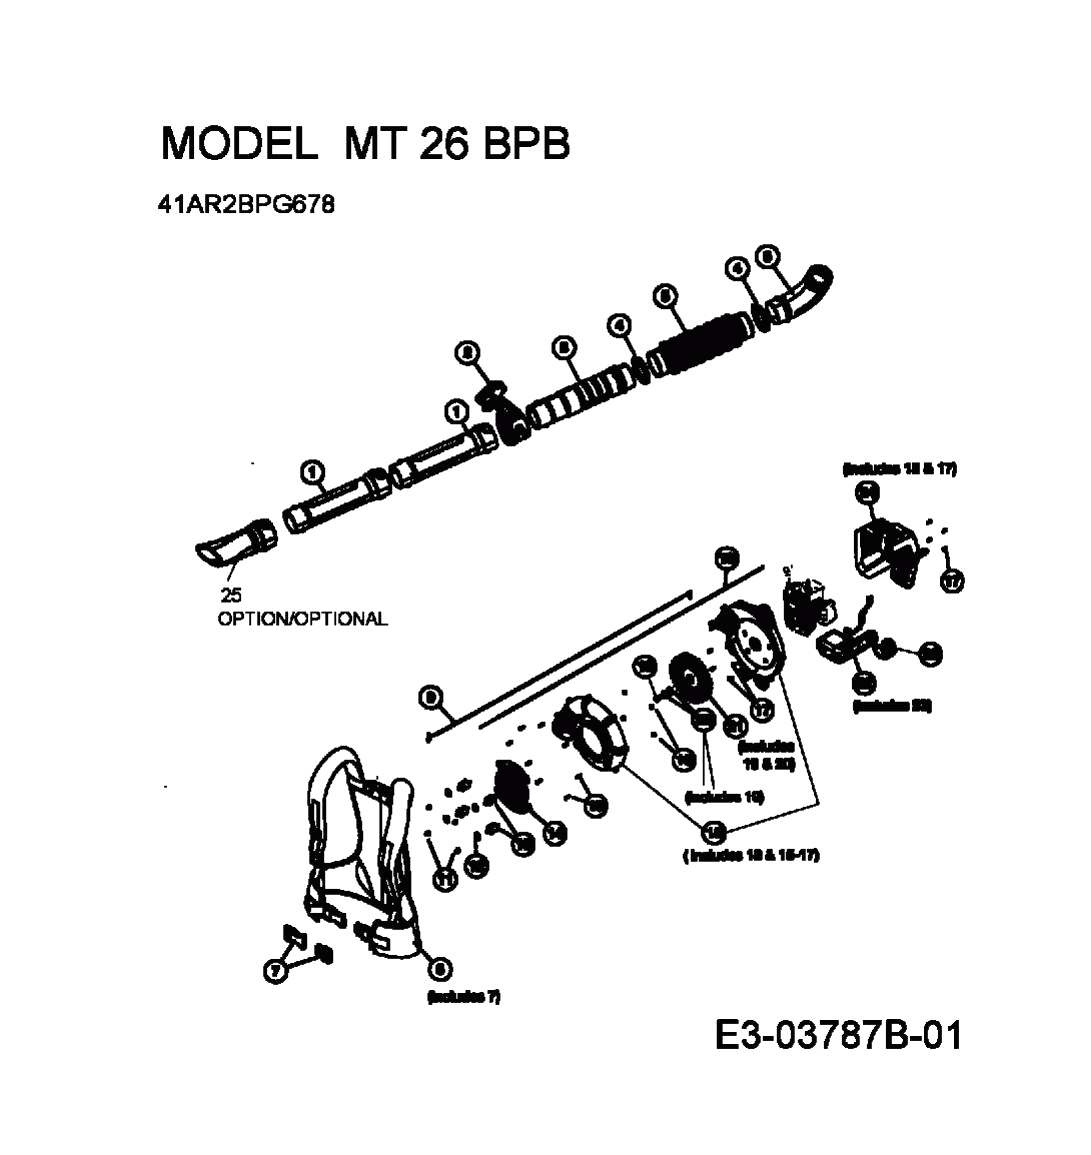 MTD Артикул 41AR2BPG678 (год выпуска 2010). Основная деталировка